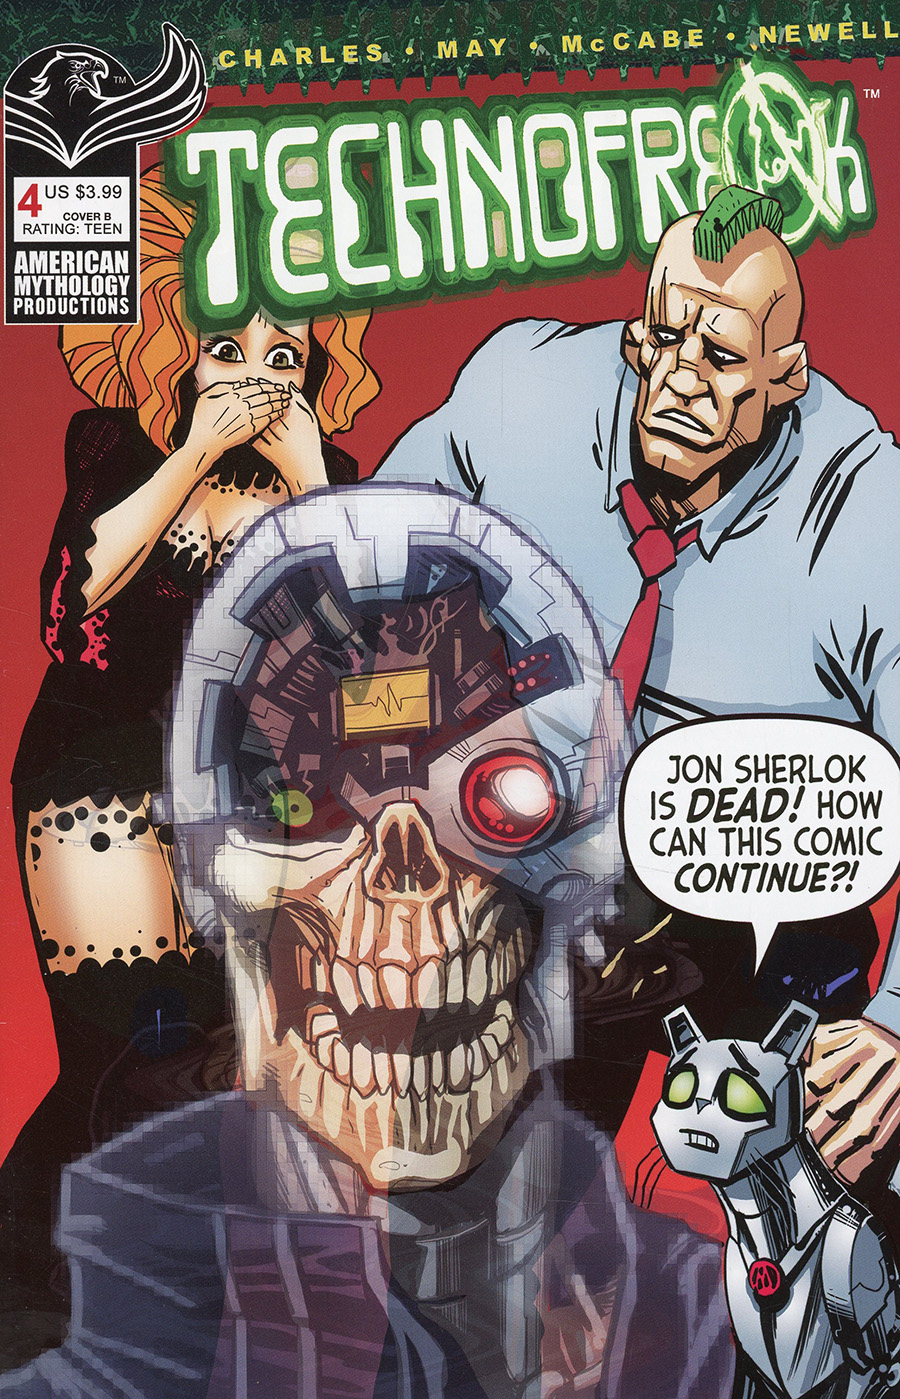 Technofreak #4 Cover B Variant John Charles & Tom Newell Cover